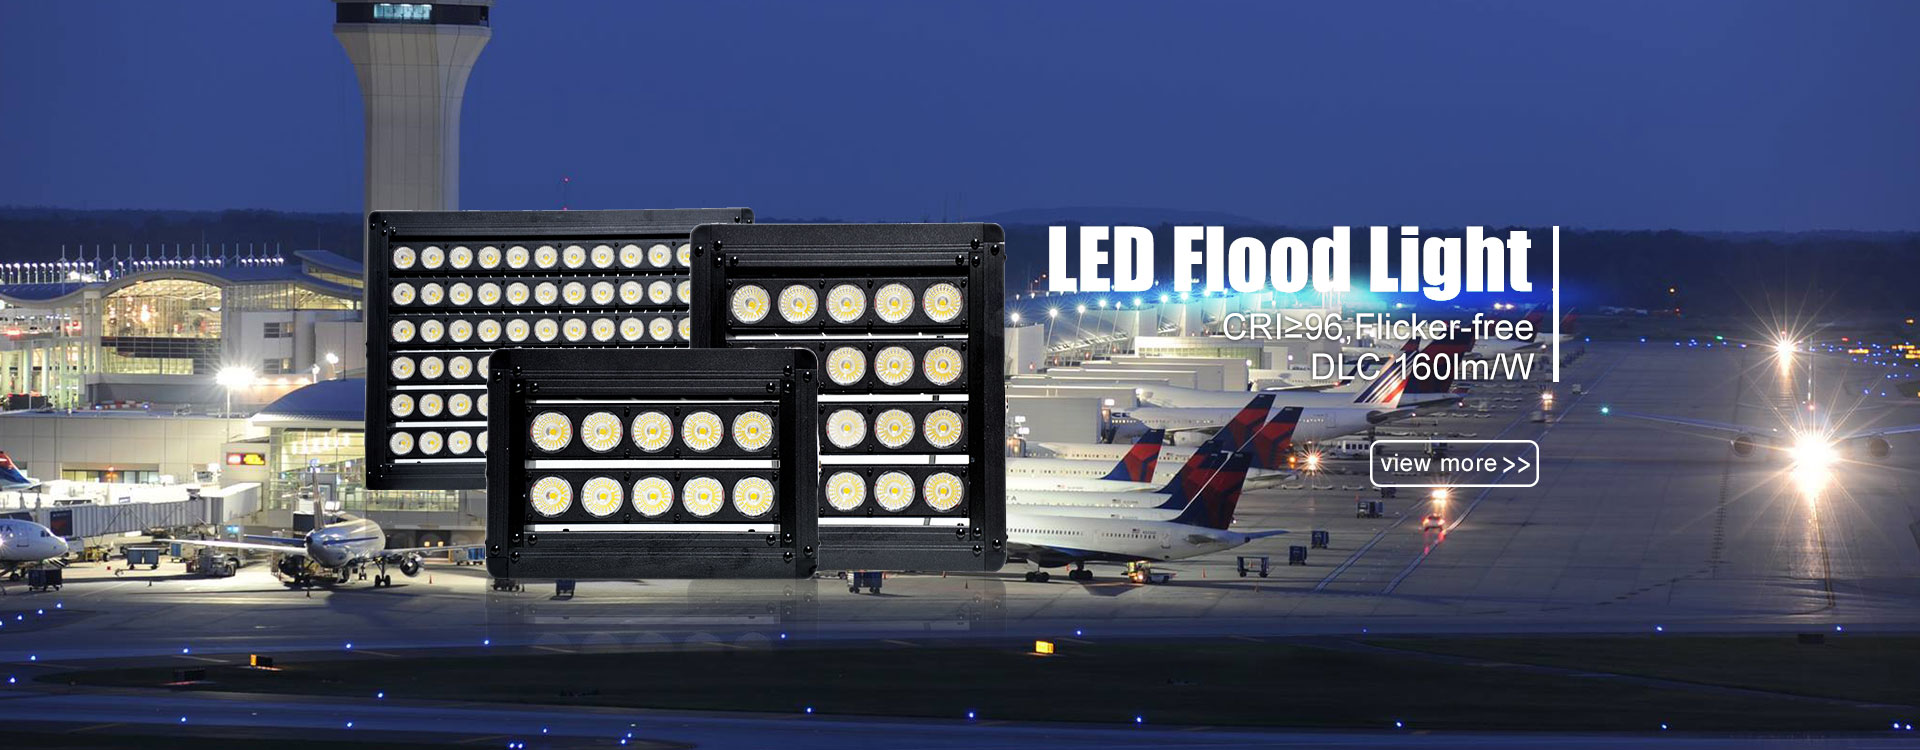 Flood Light Manufacturers 